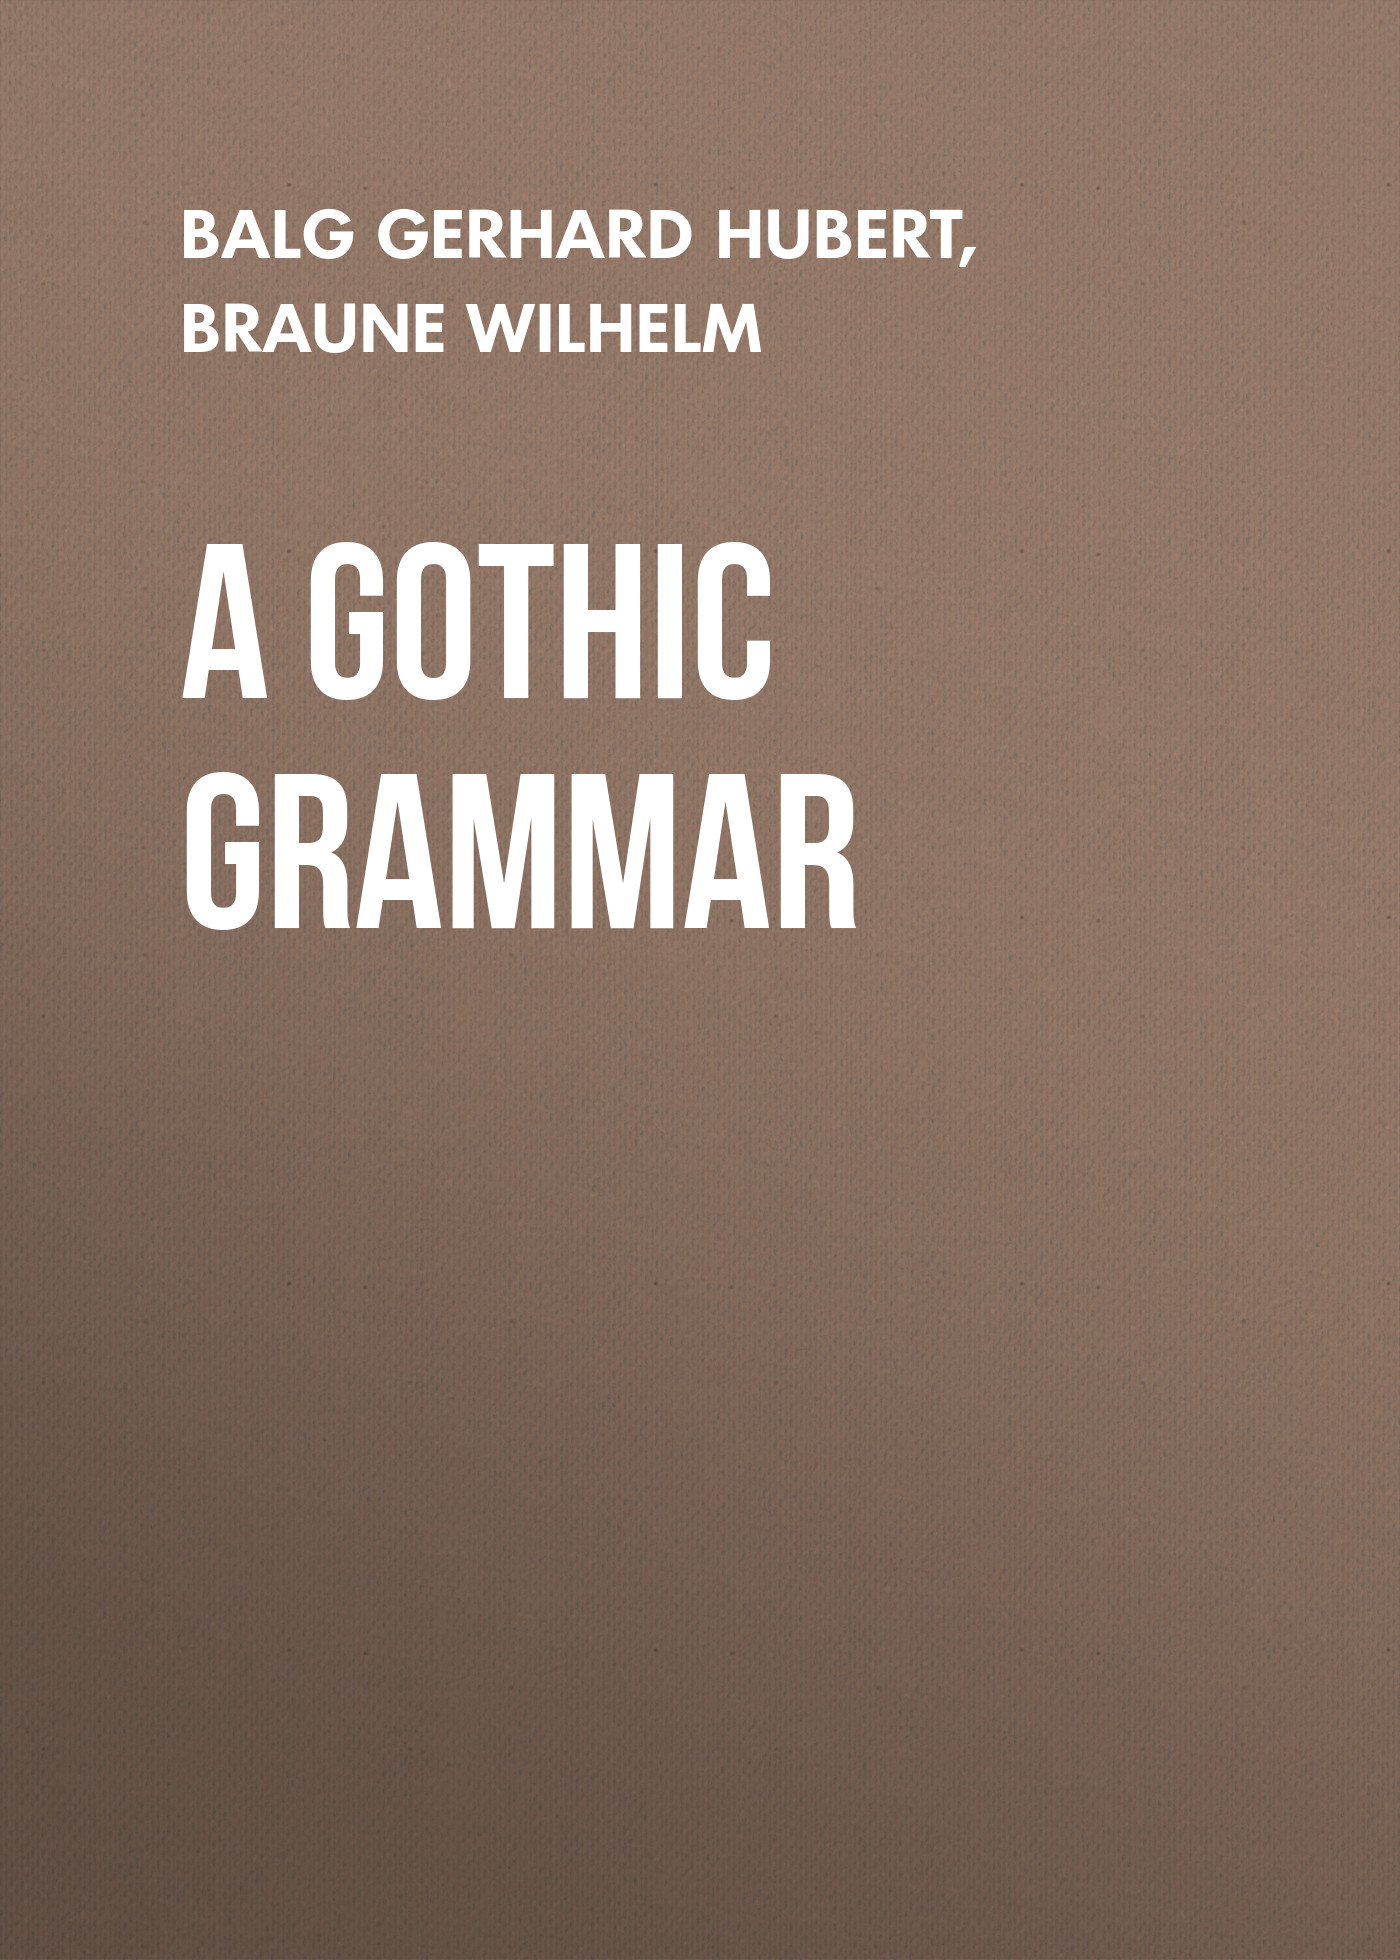 Книга A Gothic Grammar из серии , созданная Gerhard Balg, Wilhelm Braune, может относится к жанру Зарубежная старинная литература, Зарубежная классика. Стоимость электронной книги A Gothic Grammar с идентификатором 24172924 составляет 0 руб.